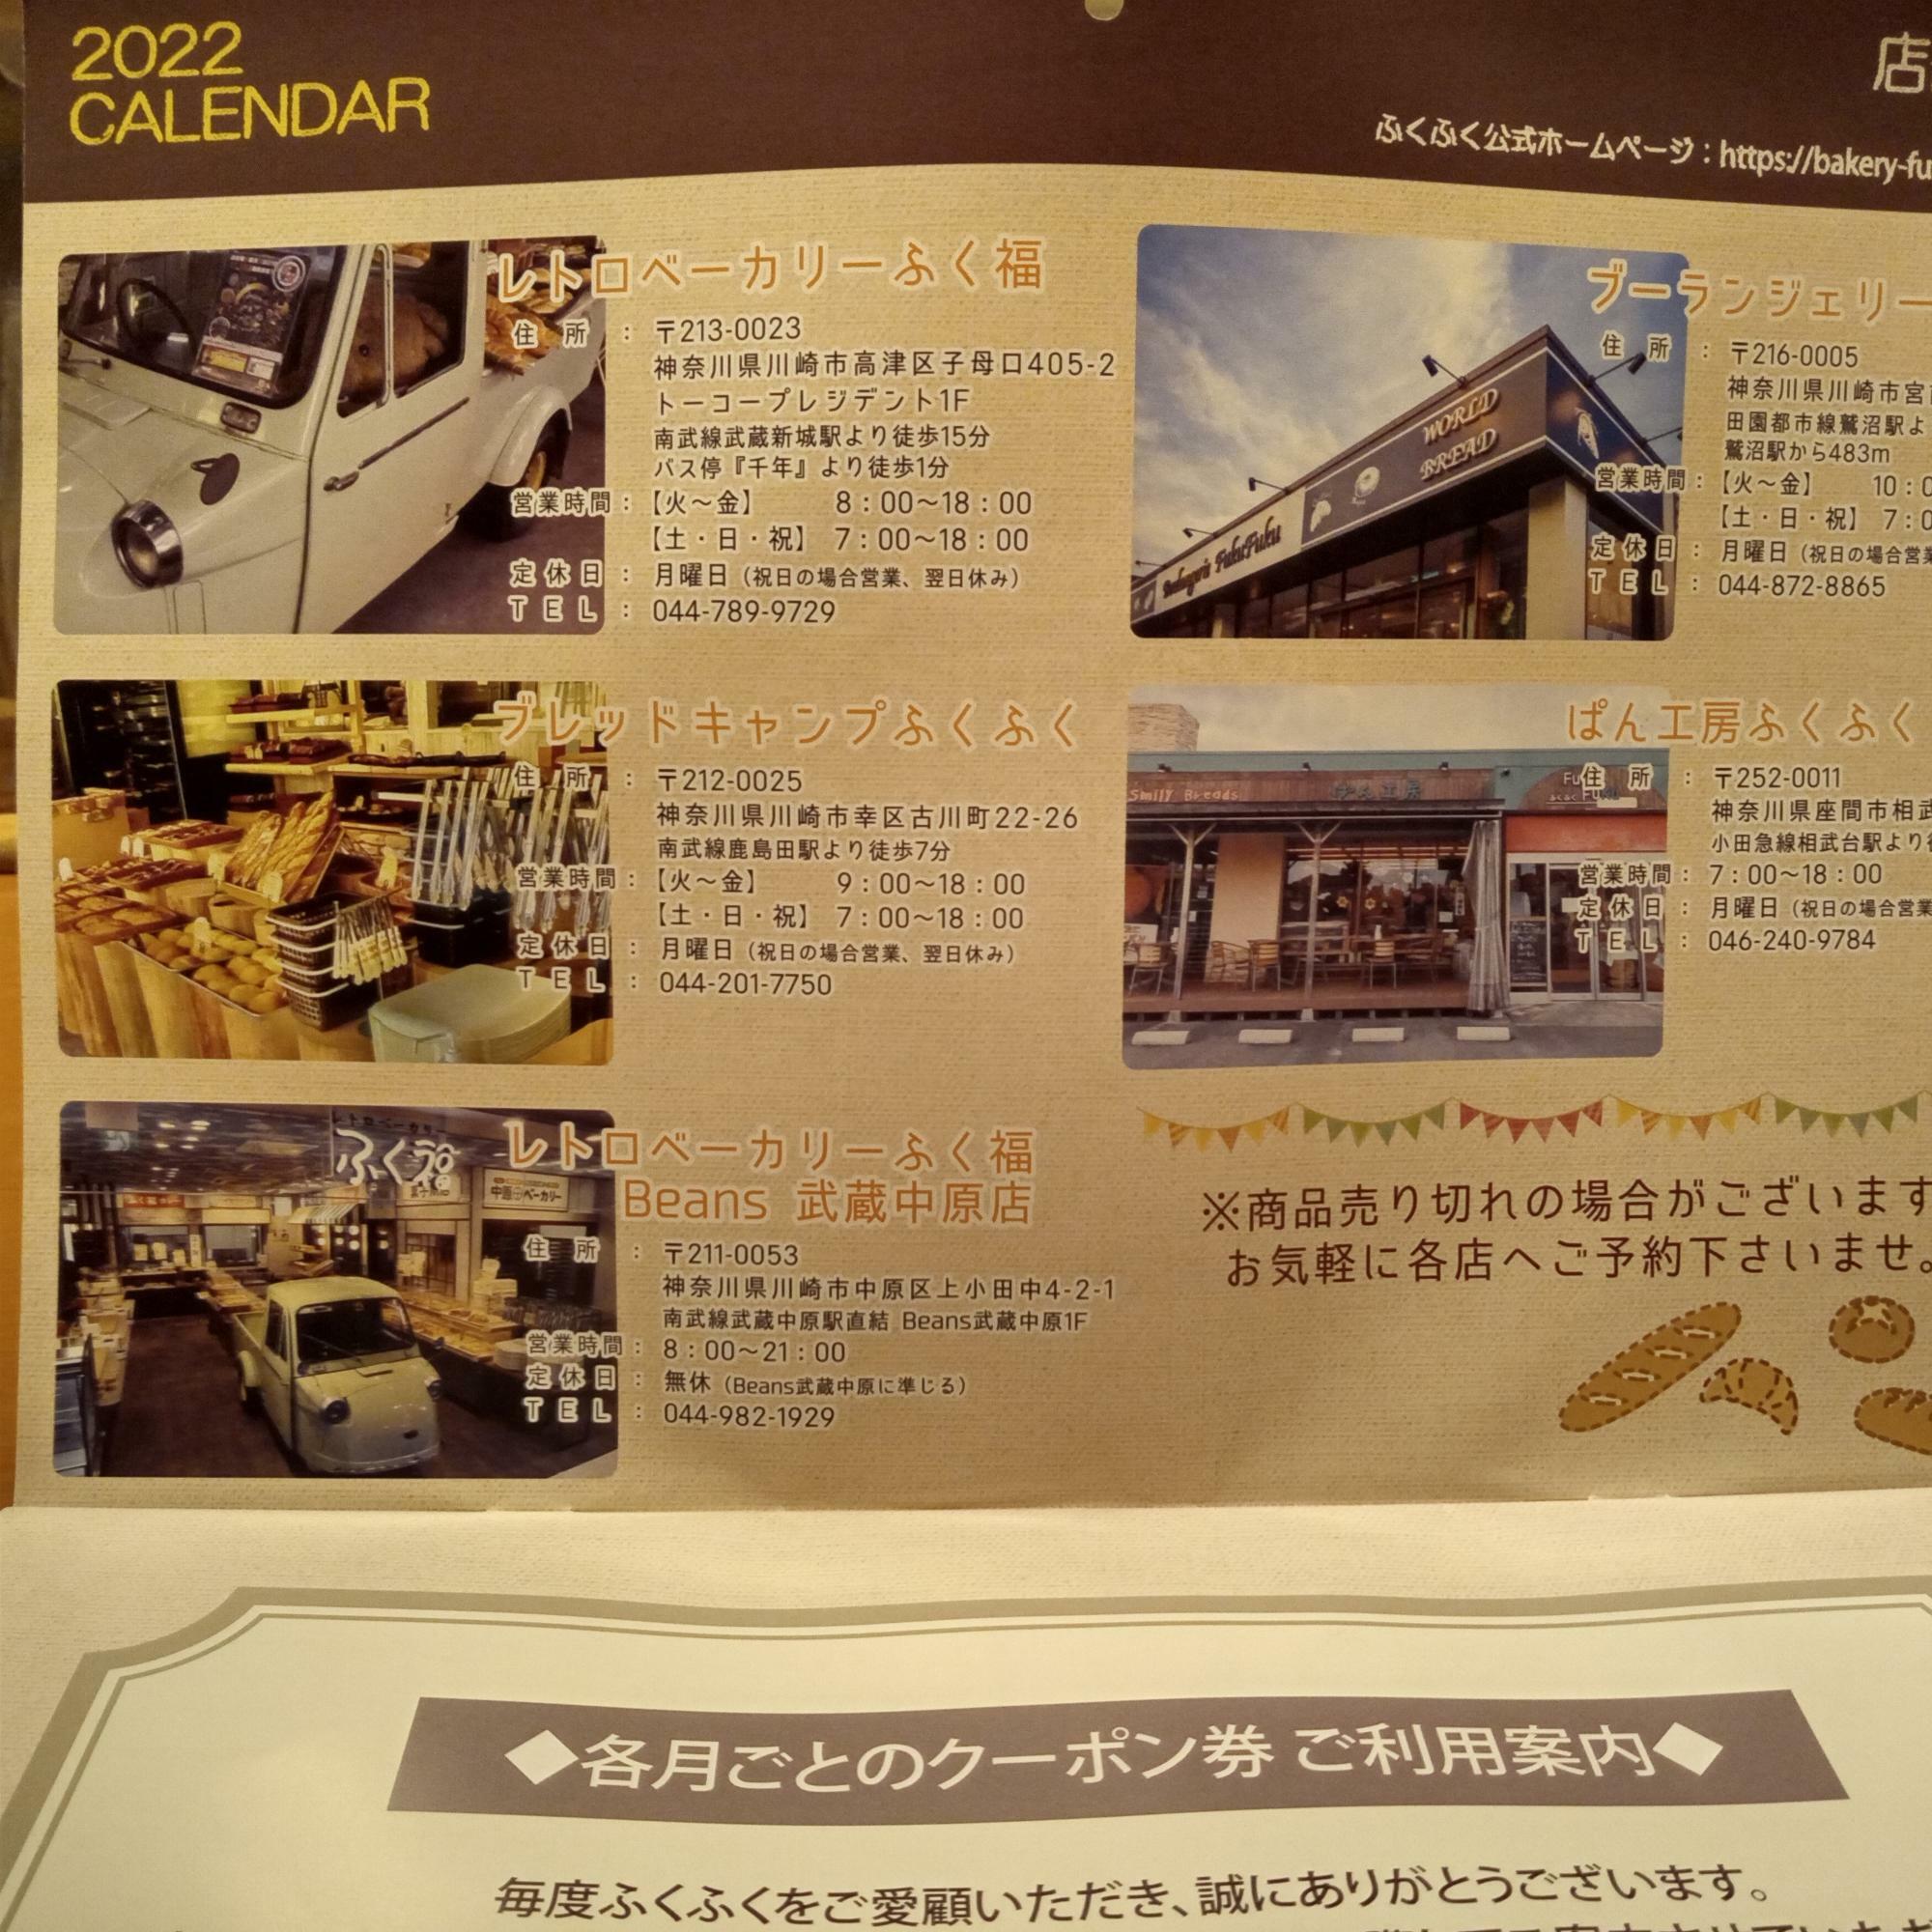 ブーランジェリーもあるとは！武蔵中原店にも高級食パンがあったので、バターを使った高級ラインでしょうか。